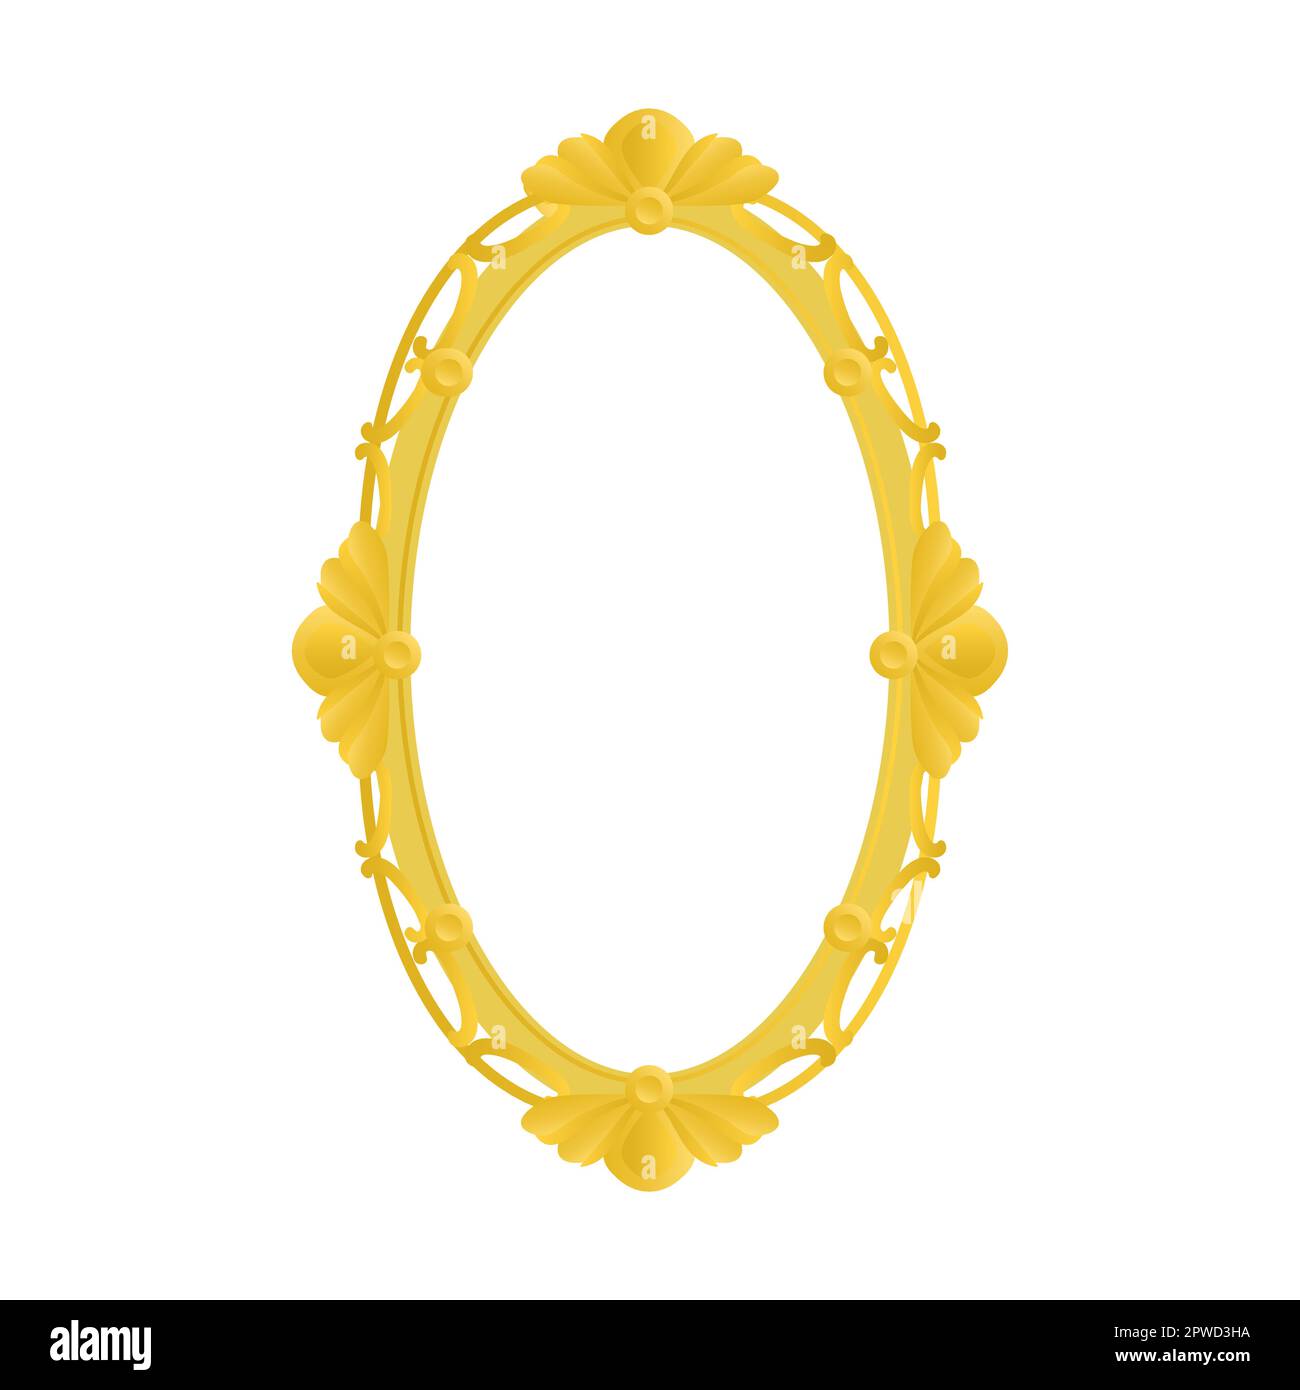 Oval hohe goldene alte königliche Grenze mit Blumenverzierung für Bilder und Fotos auf weißem Hintergrund. Leerer kunstvoller Rahmen Stock Vektor